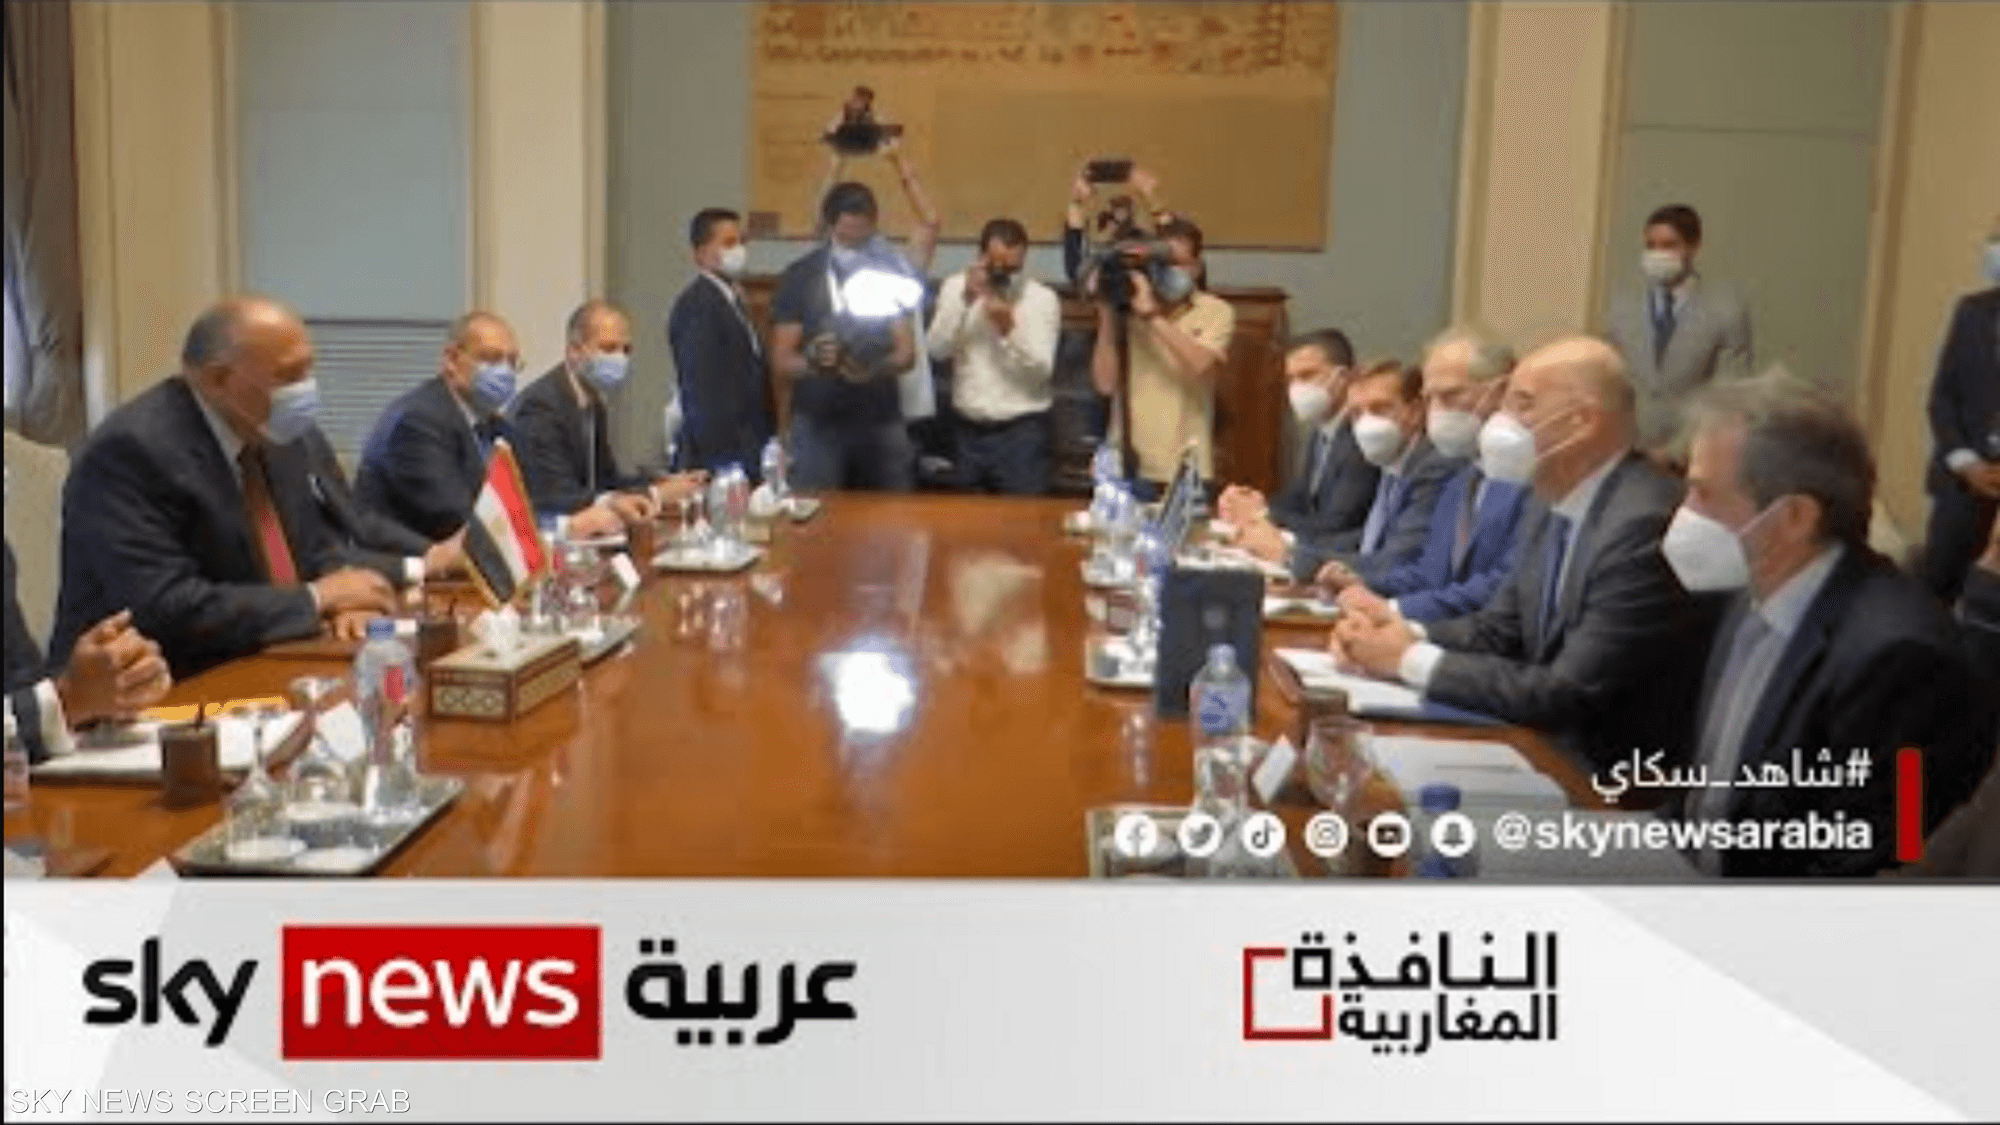 عقيلة صالح يطالب بعدم الاعتراف بالاتفاق بين الدبيبة وتركيا